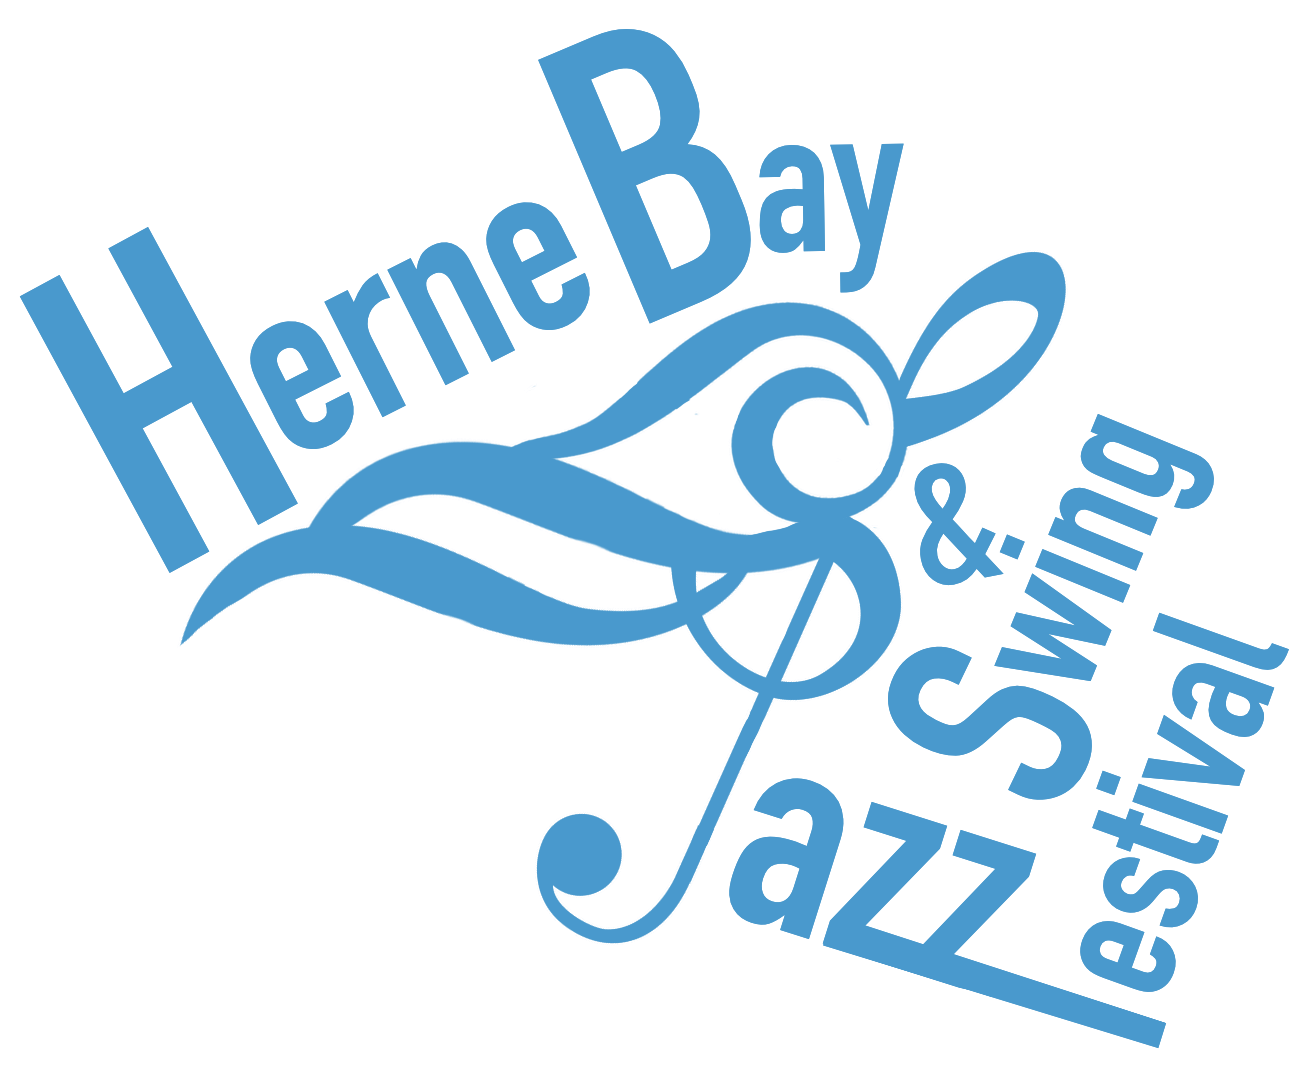 Herne Bay Jazz & Swing Festival